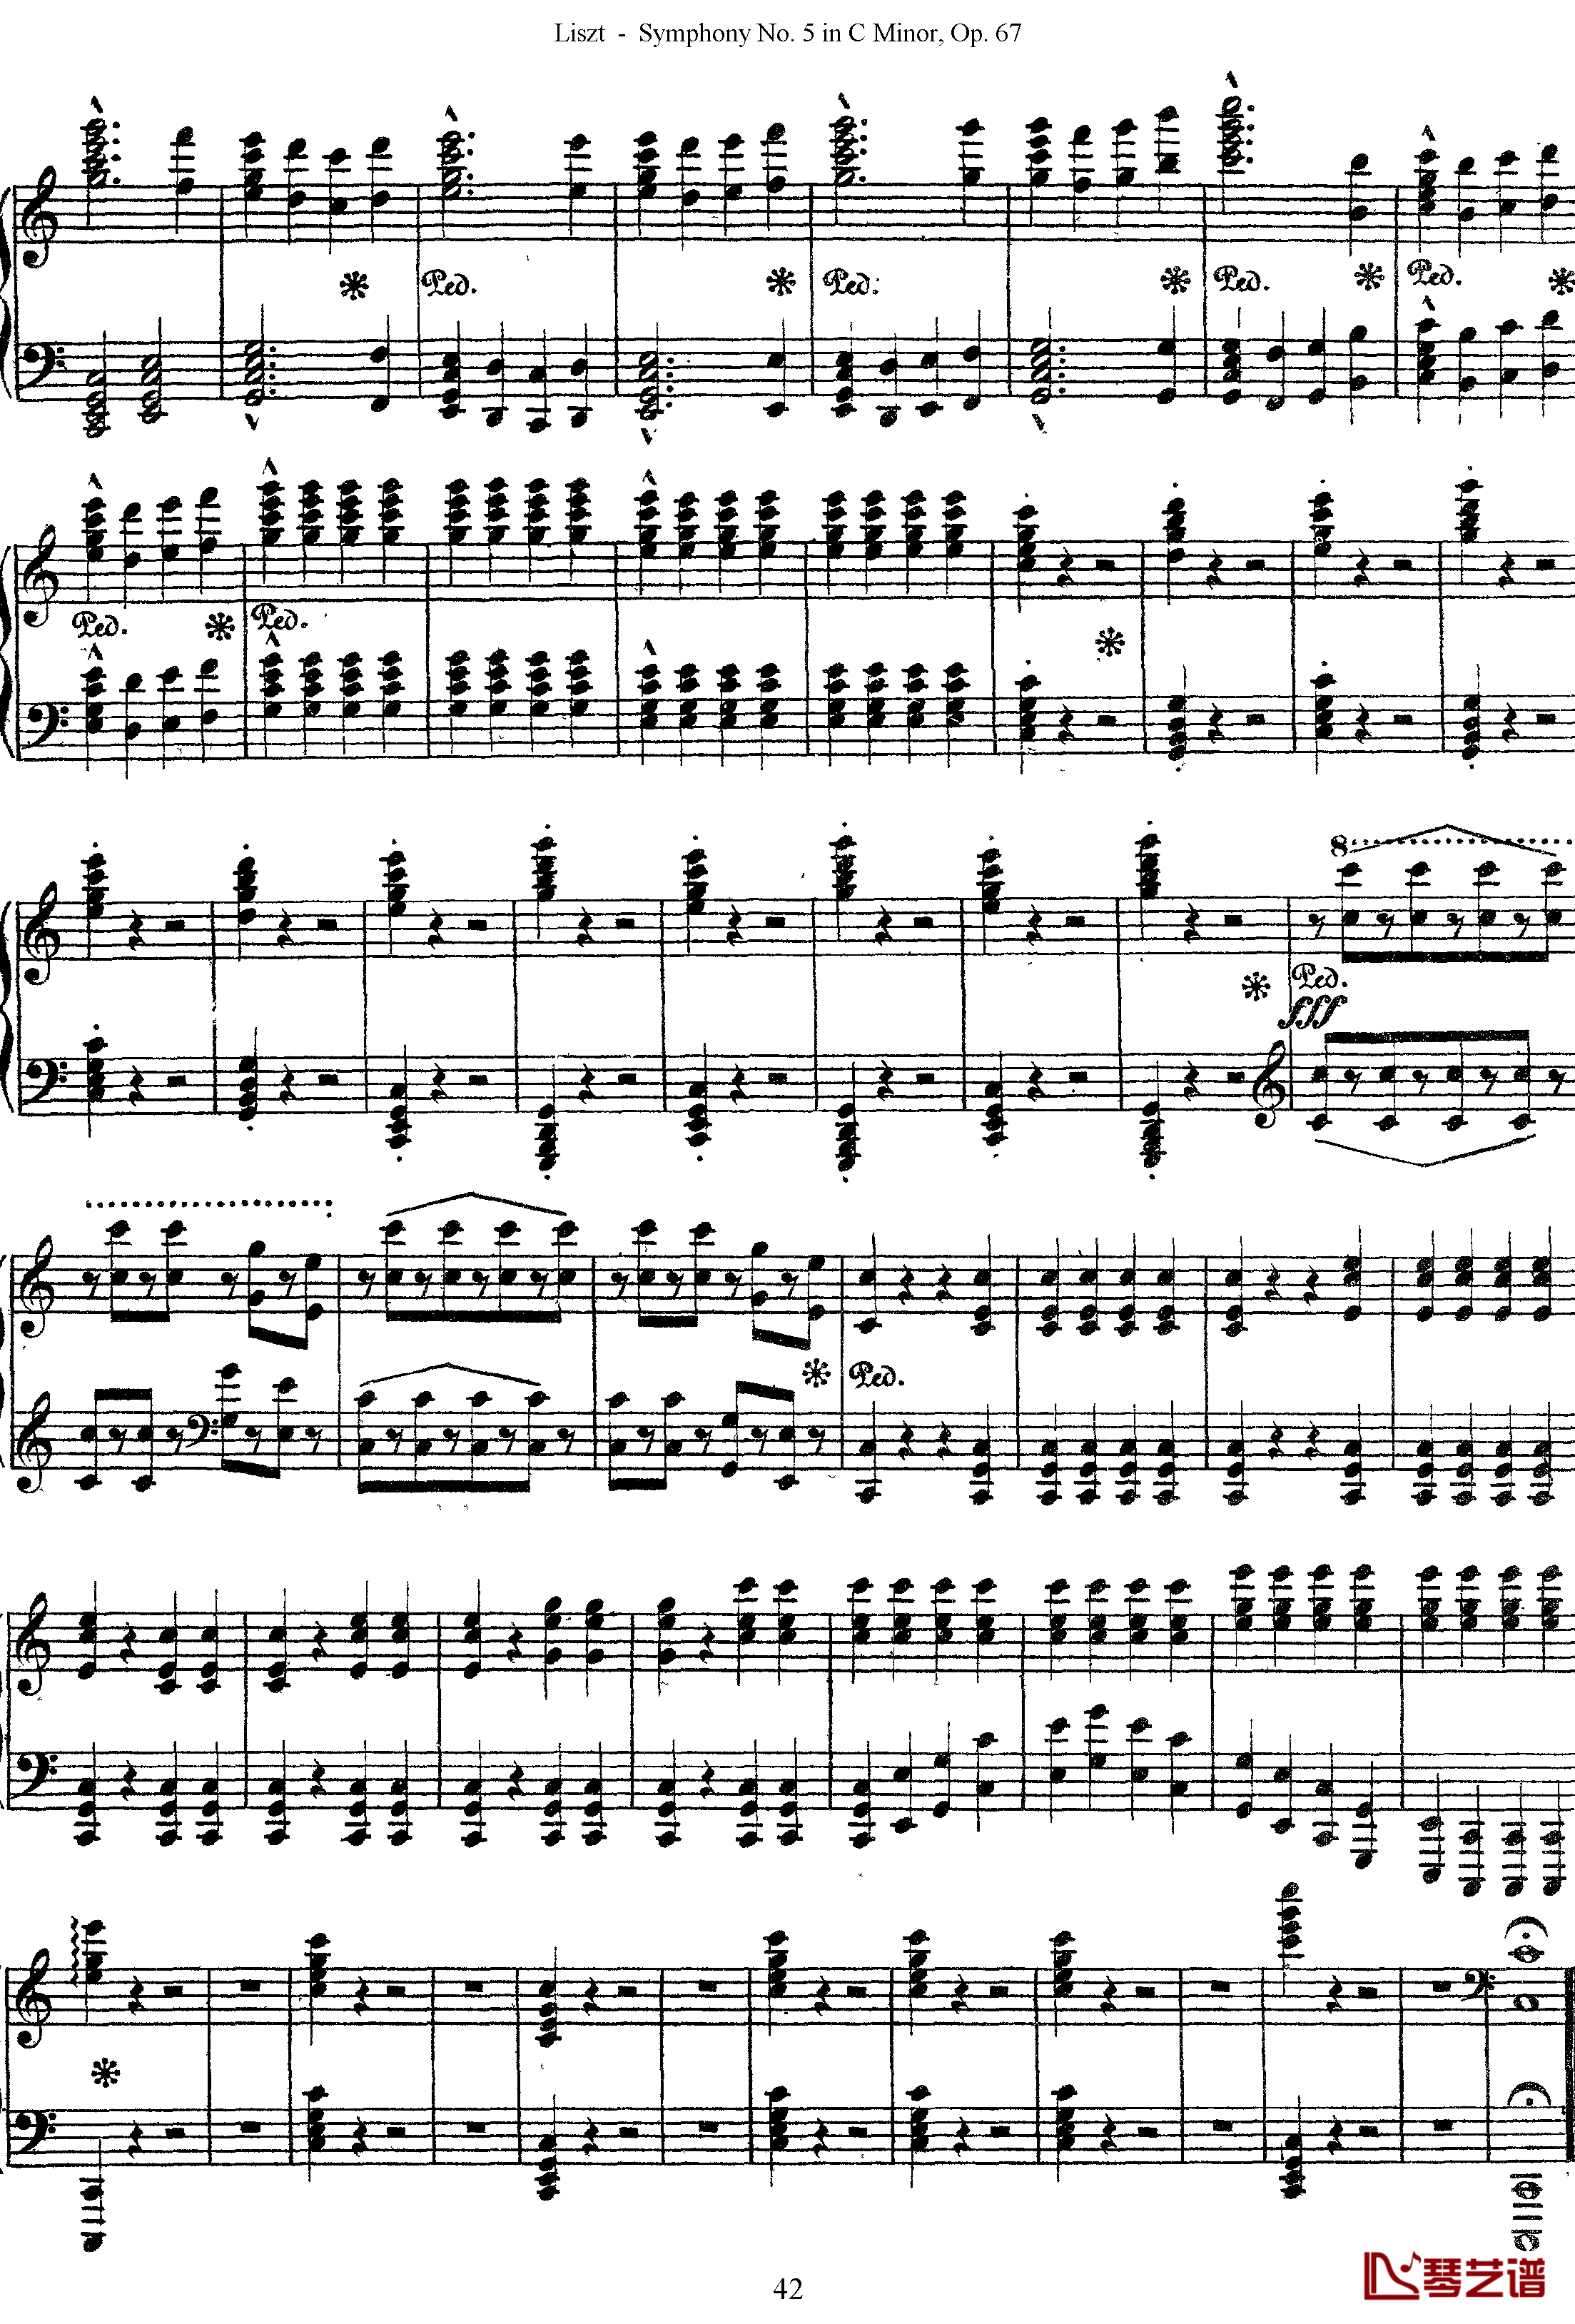 第五交响乐的钢琴曲钢琴谱-李斯特-李斯特改编自贝多芬42